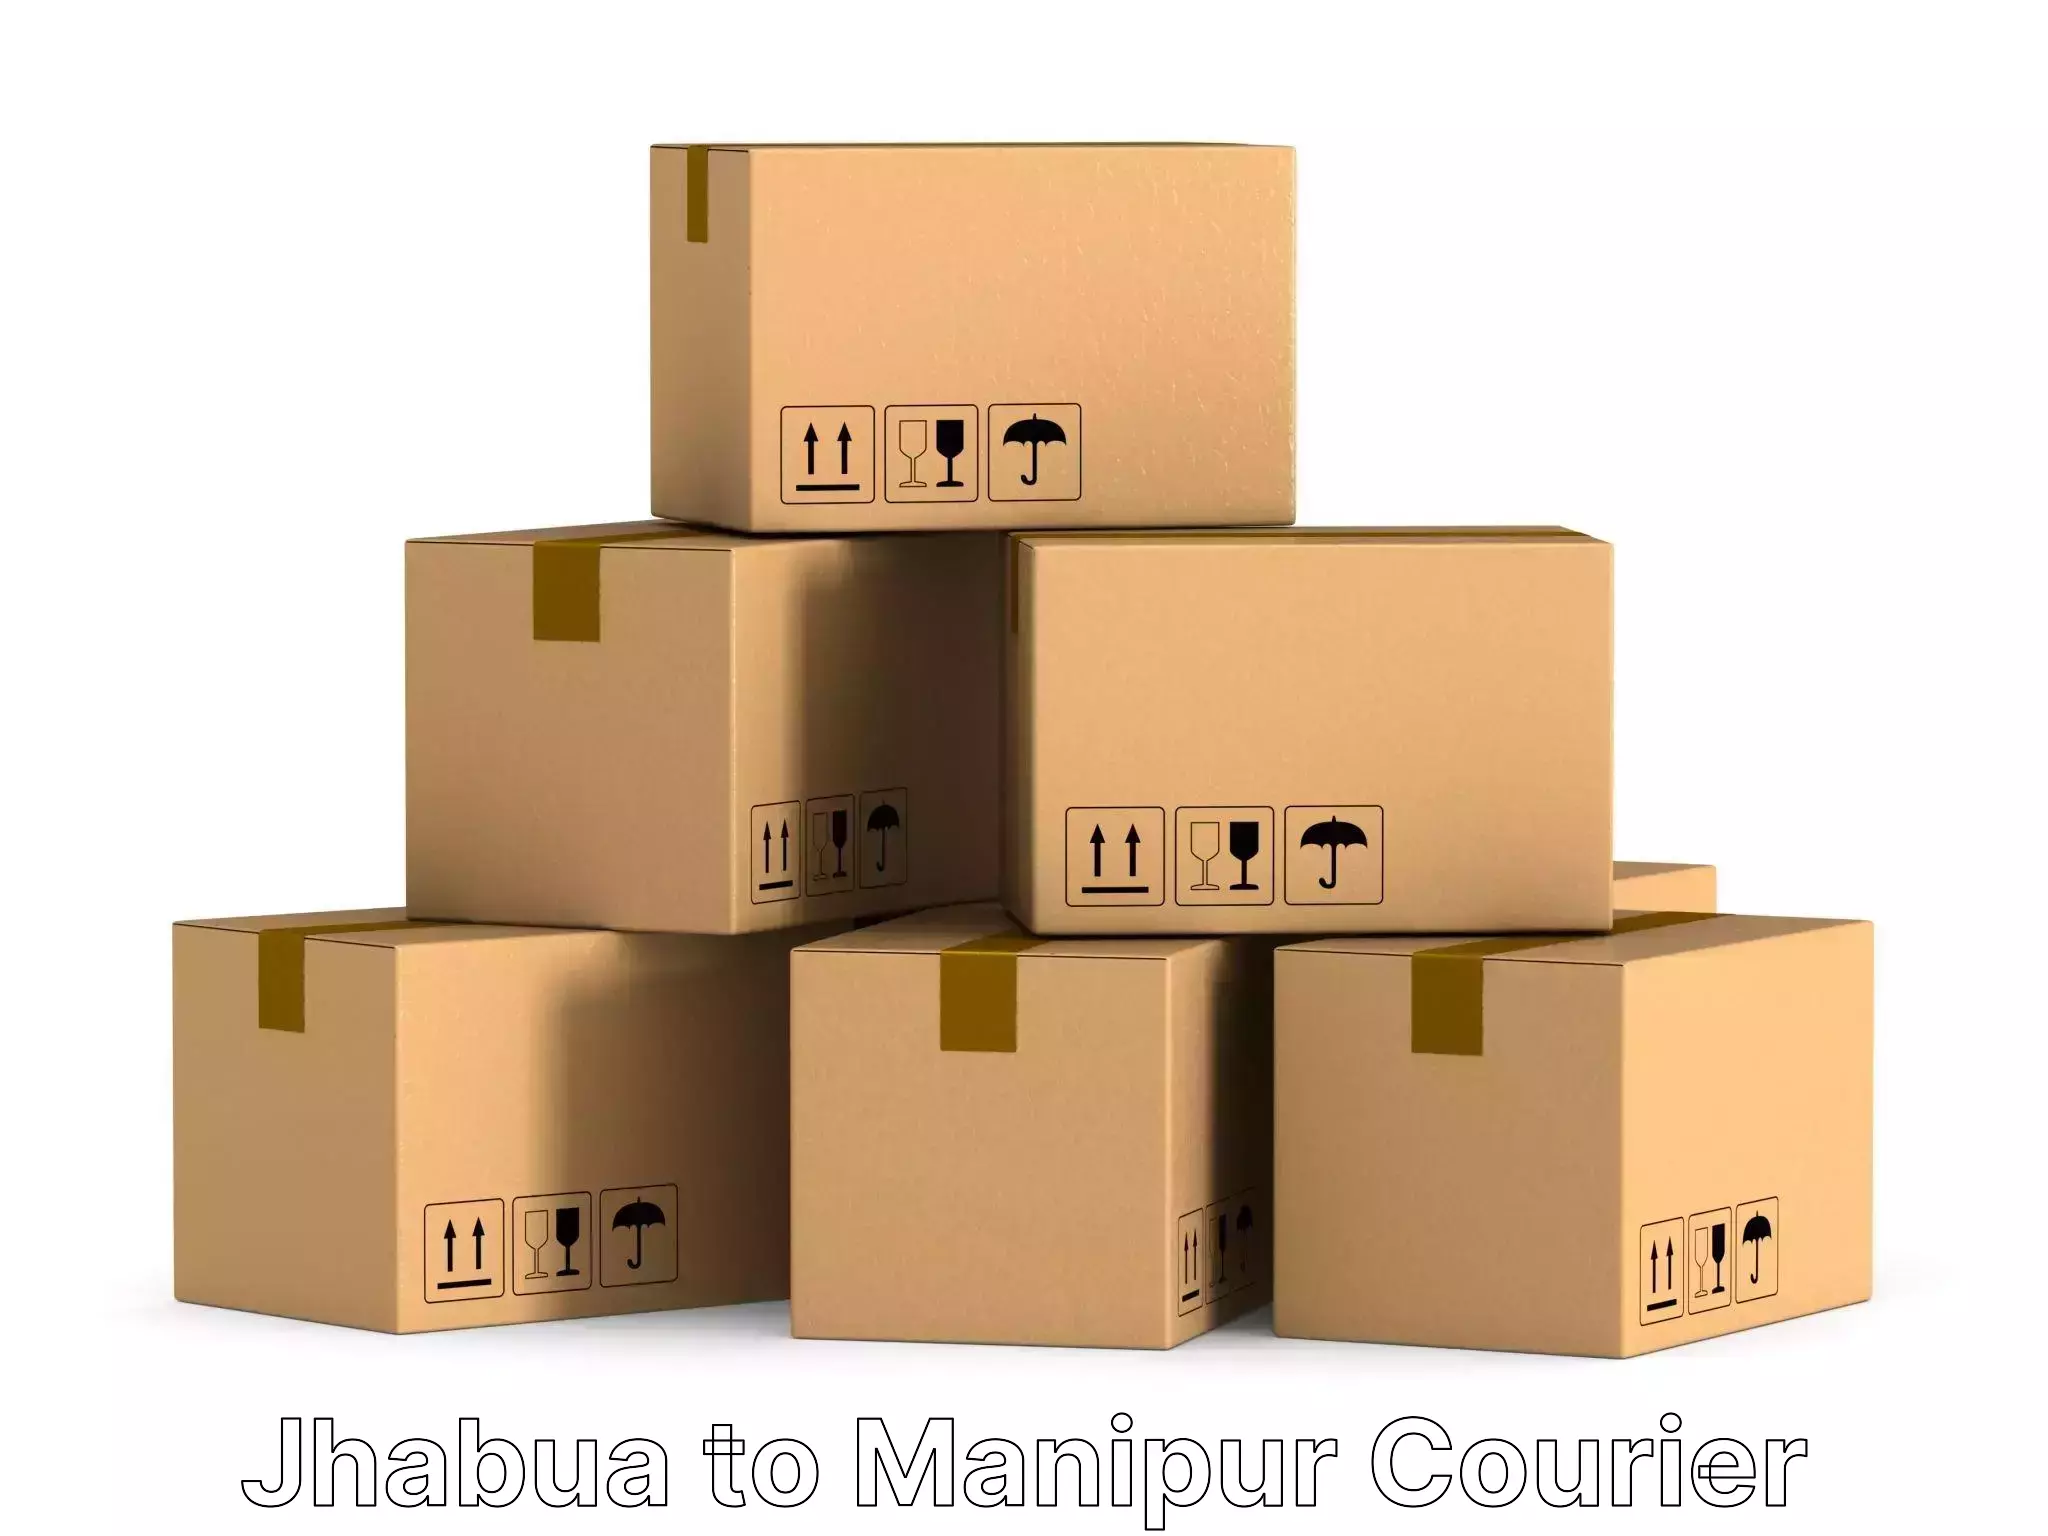 Furniture moving service Jhabua to Senapati